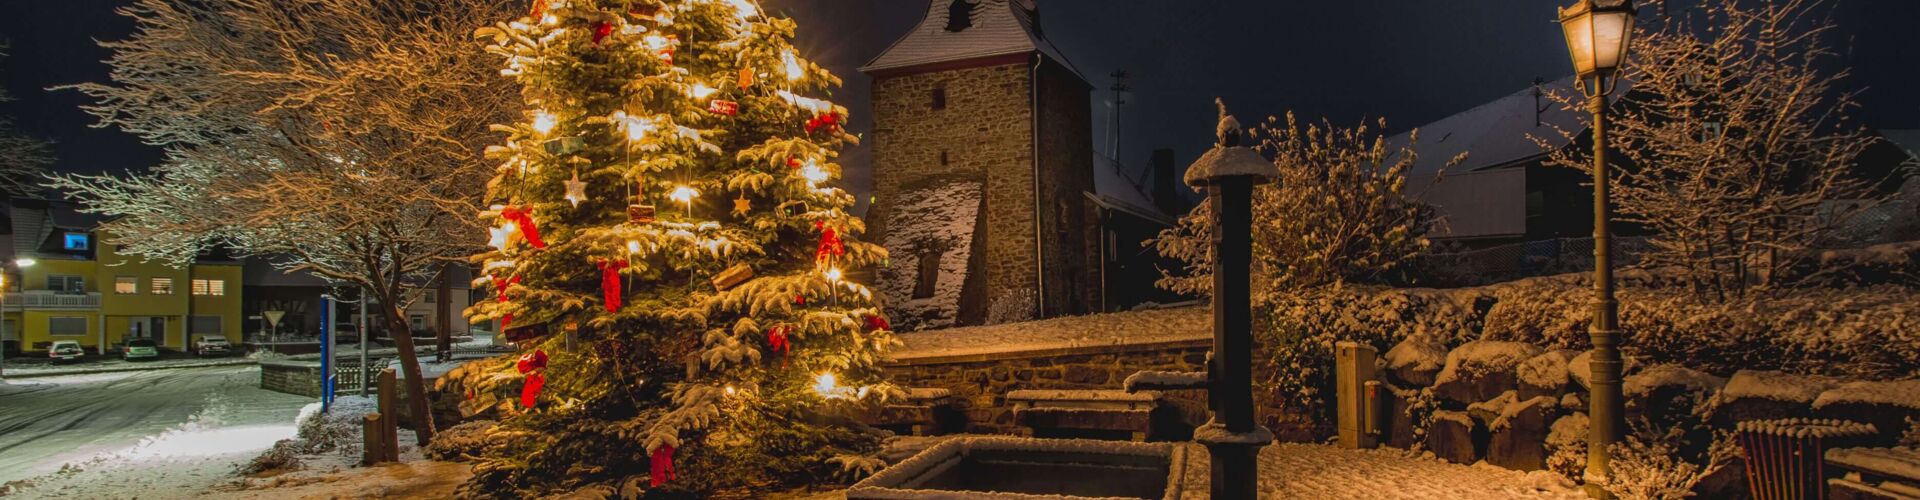 Weihnachtsbaum in Mademühlen, Bild Thomas Kempfer